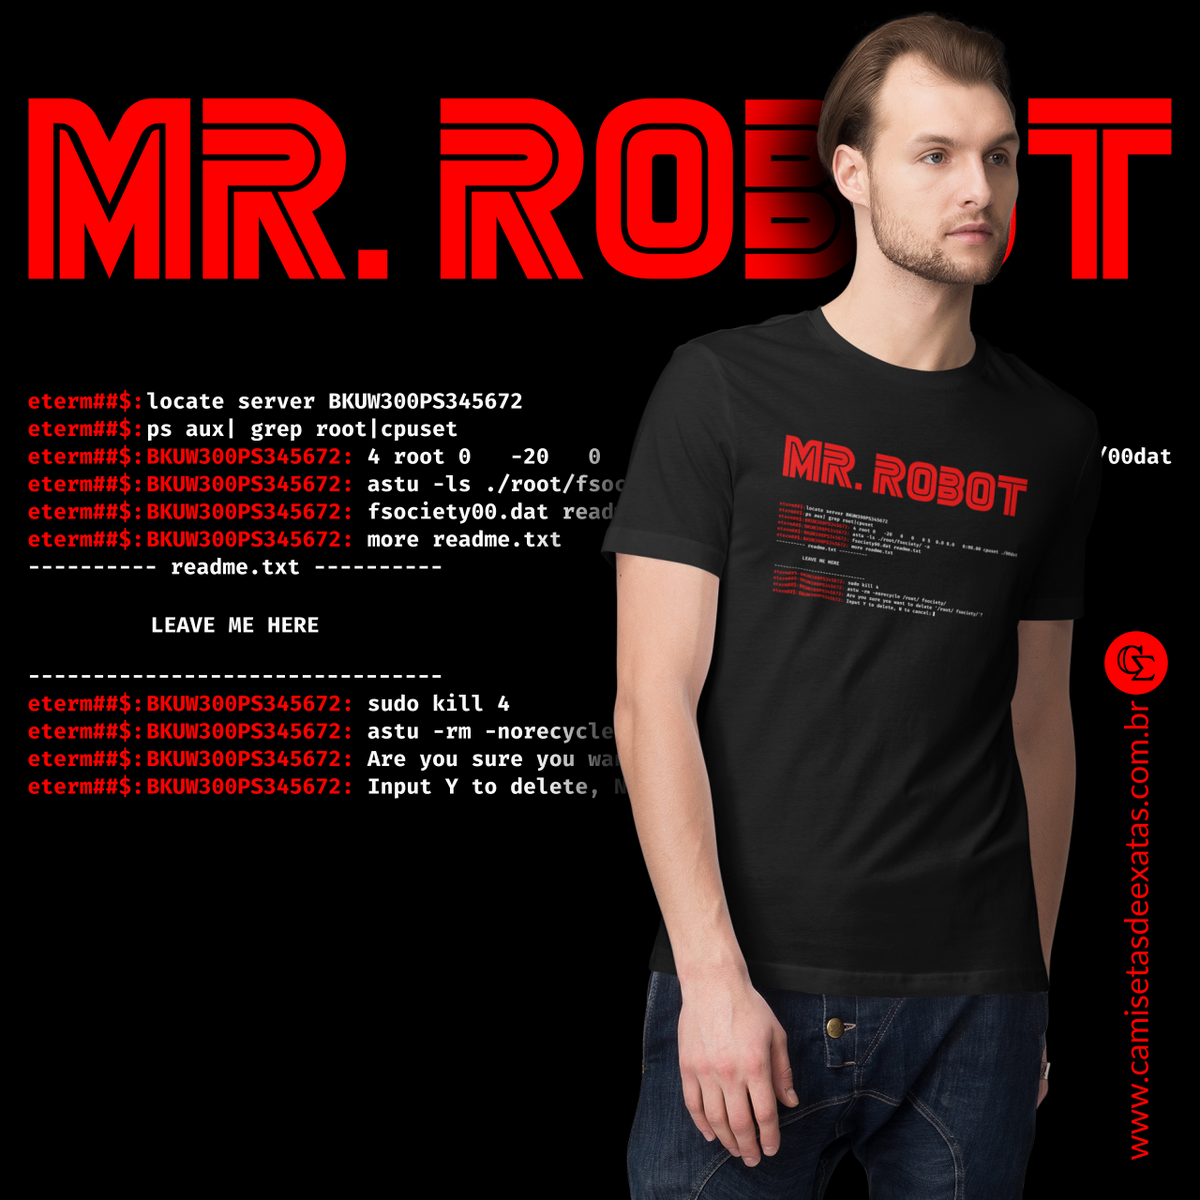 Nome do produto: MR. ROBOT